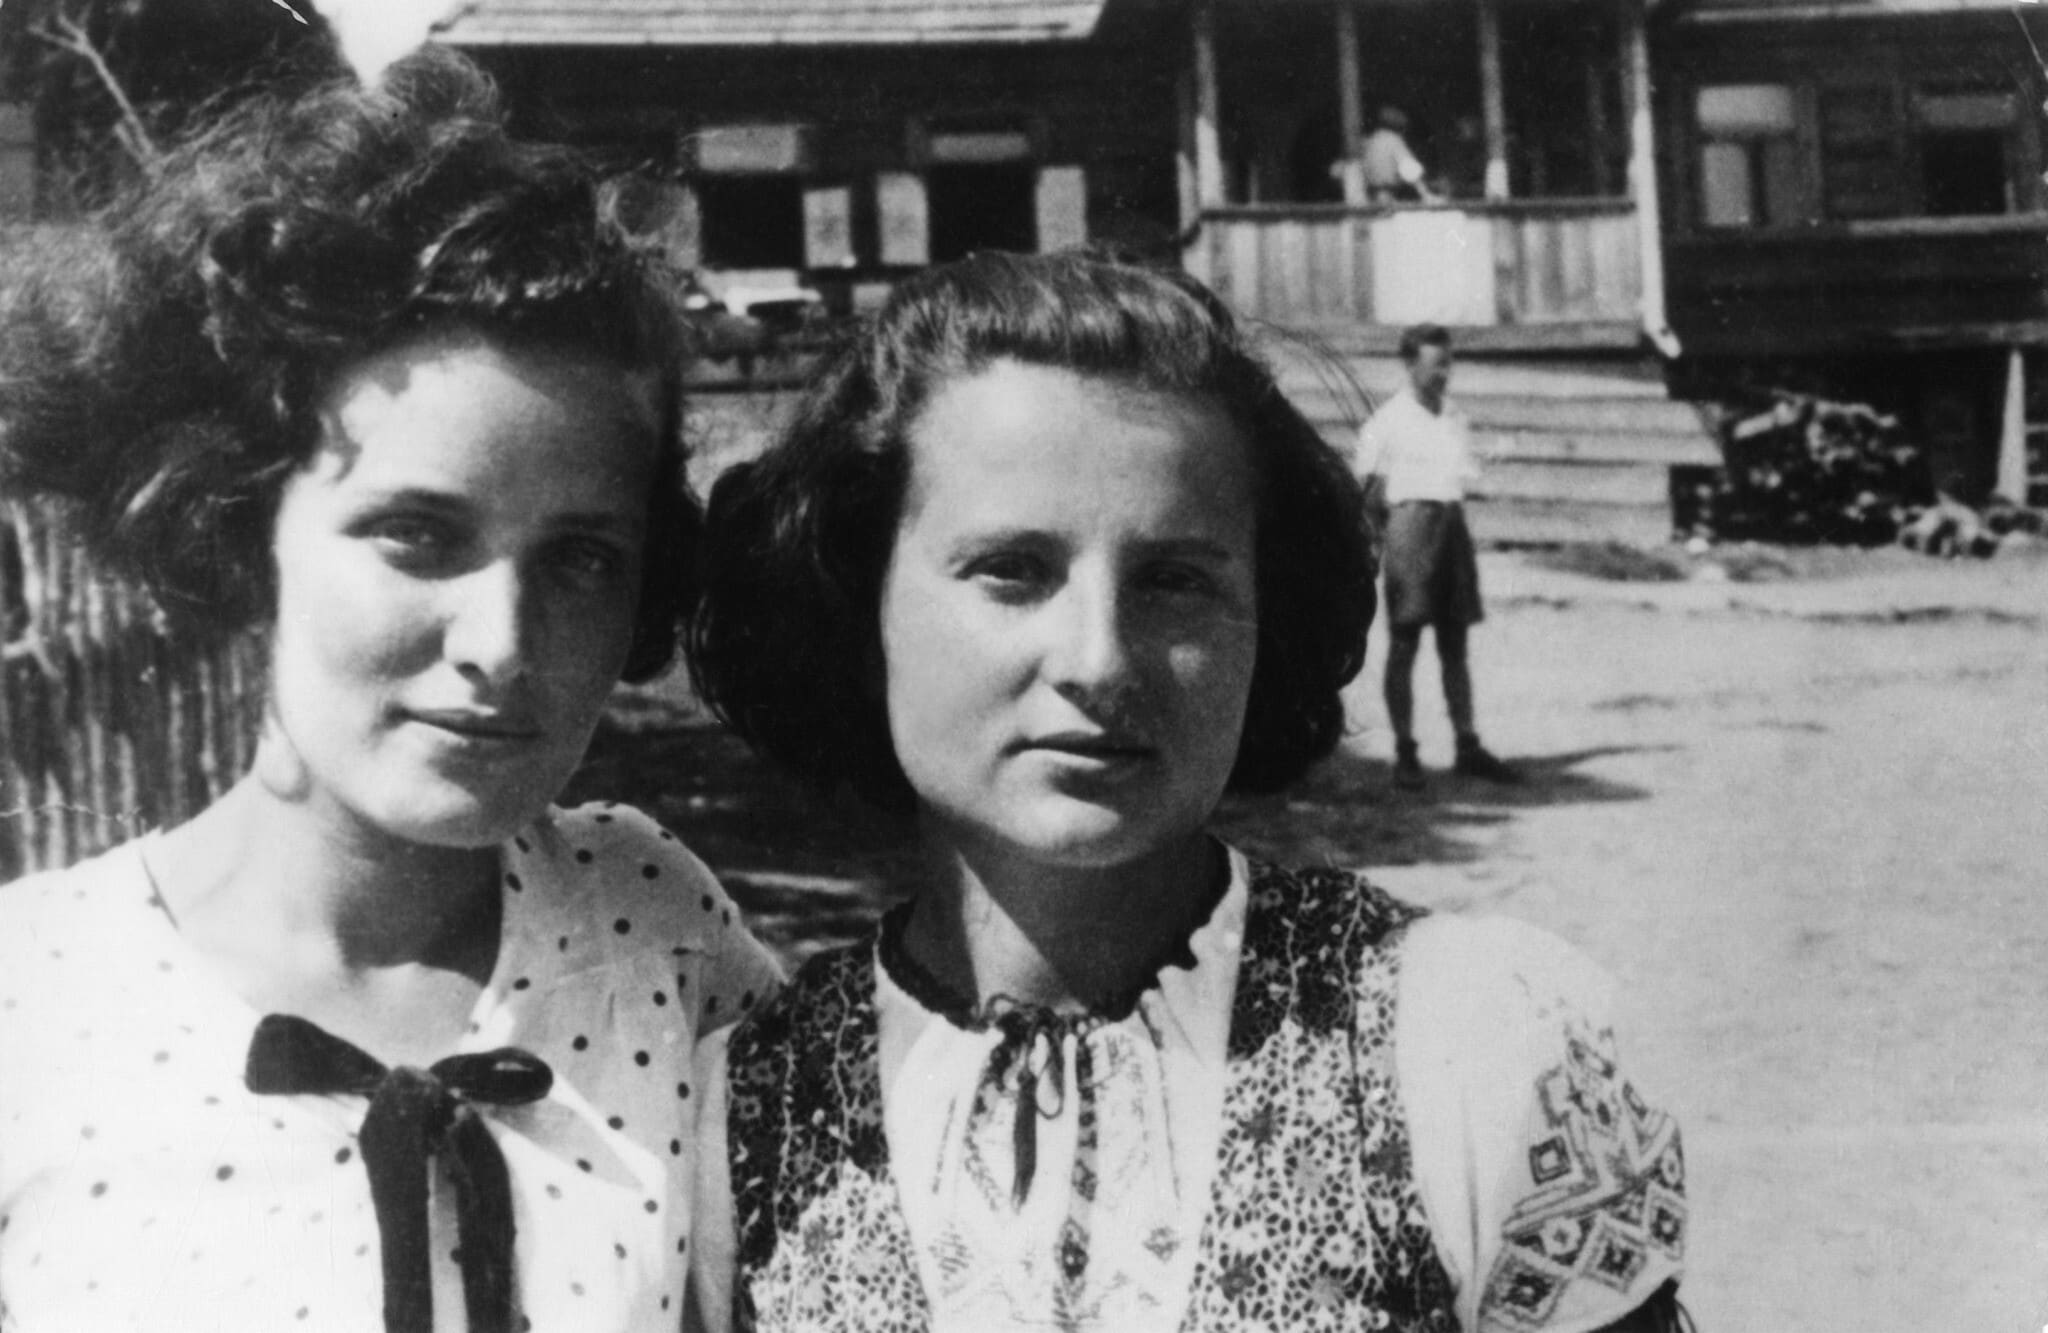 מינקה ליבסקינד וגוסטה דוידסון במחנה הקיץ עקיבא, 1938 (צילום: ארכיון לוחמי הגטאות)